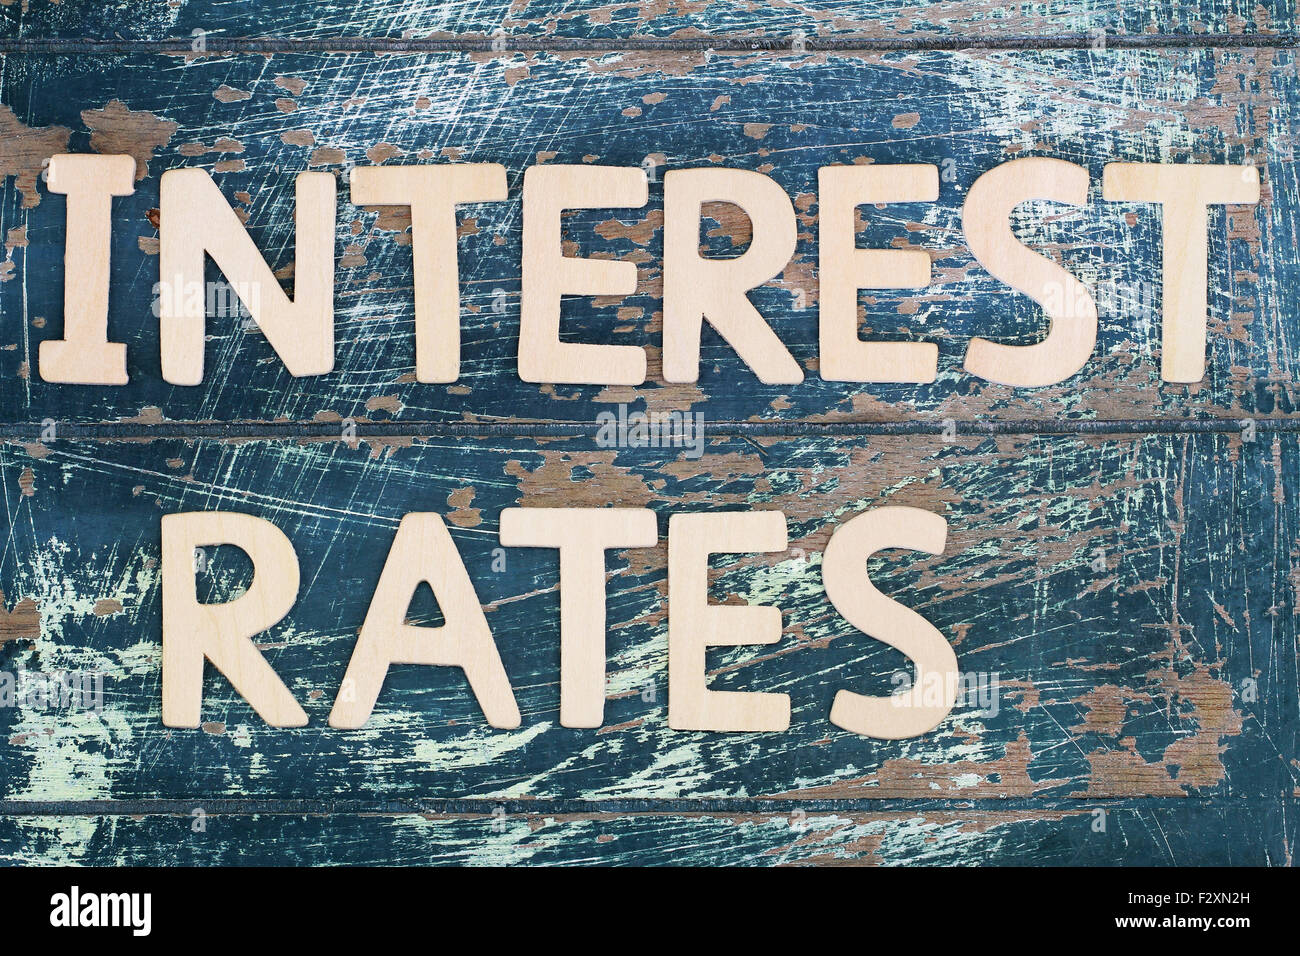 Les taux d'intérêt écrites avec des lettres en bois sur la surface en bois rustique Banque D'Images